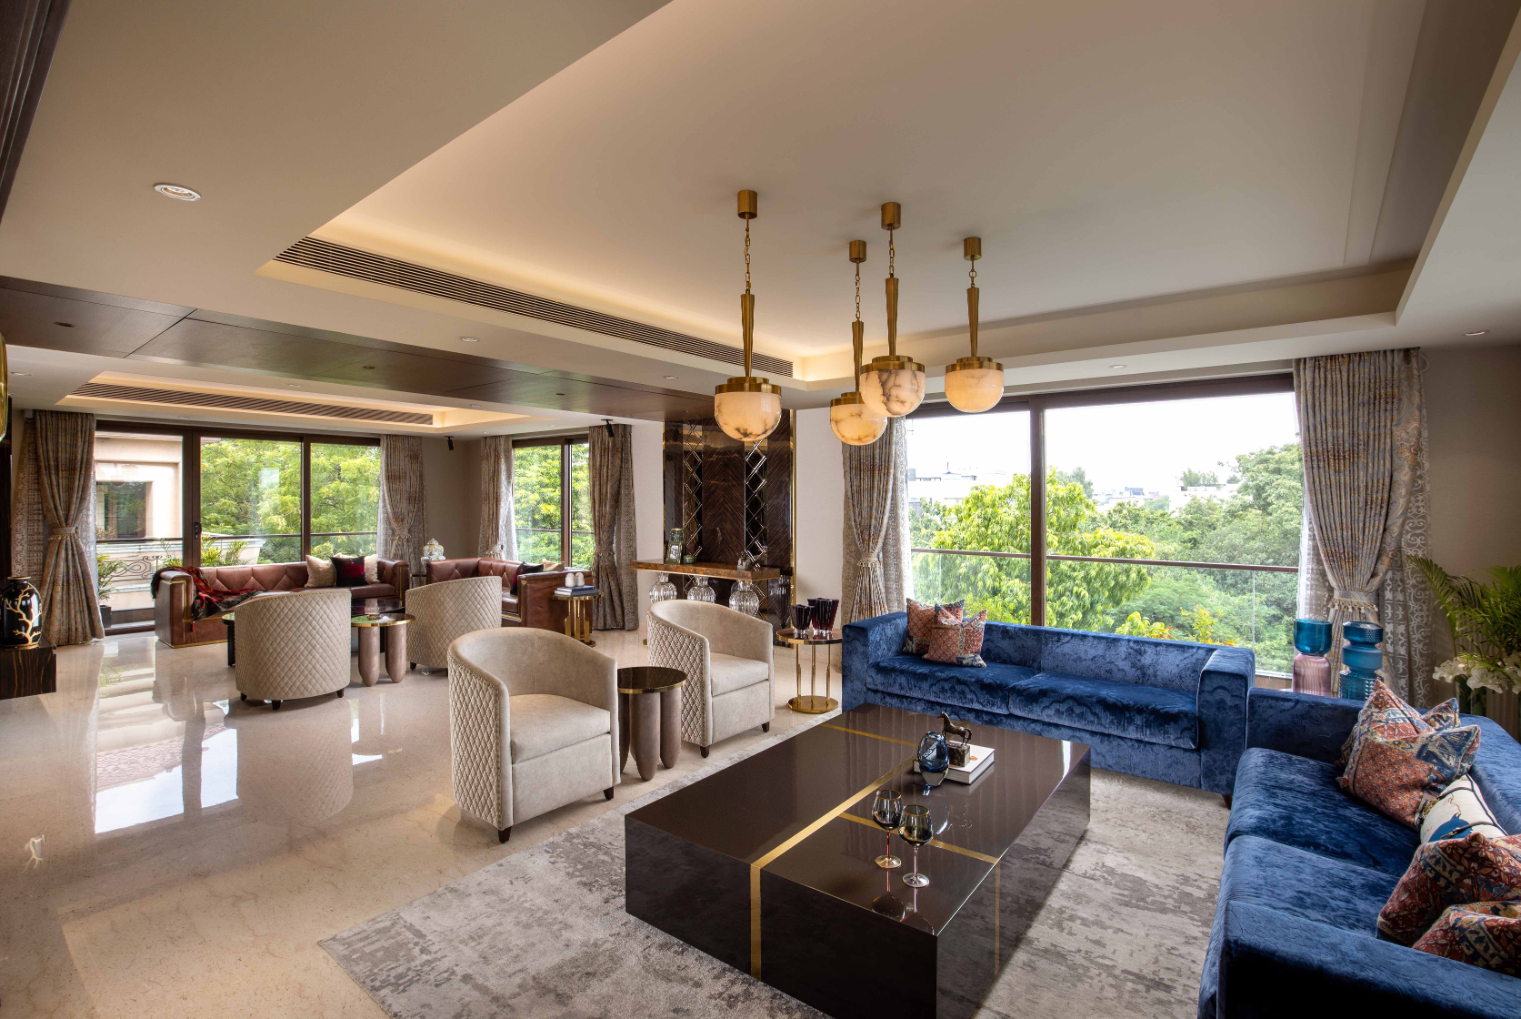 67 Luxury Living Room Design Ideas - Designing Idea